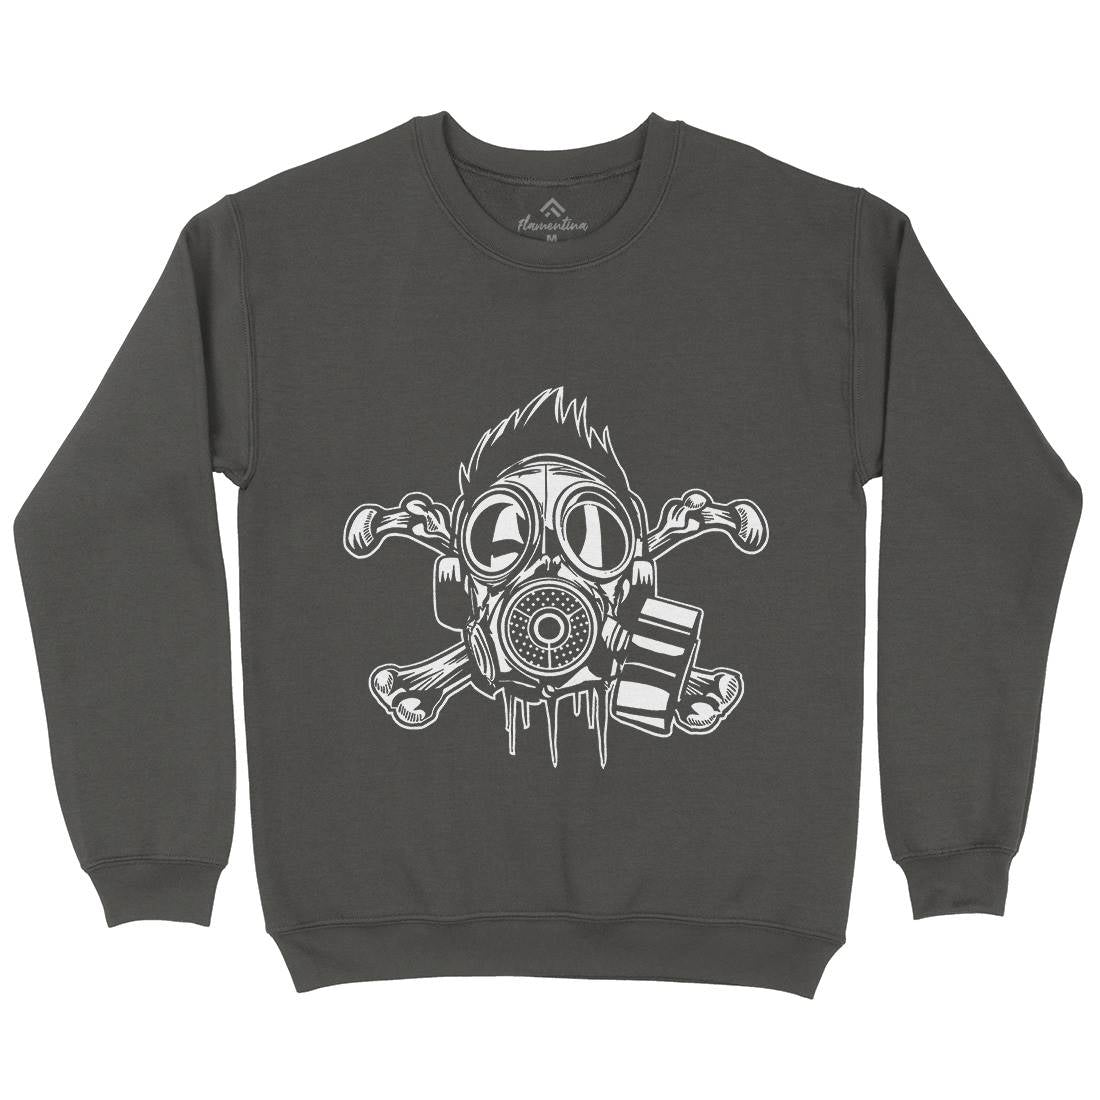 Cross Bones Kids Crew Neck Sweatshirt Horror A518